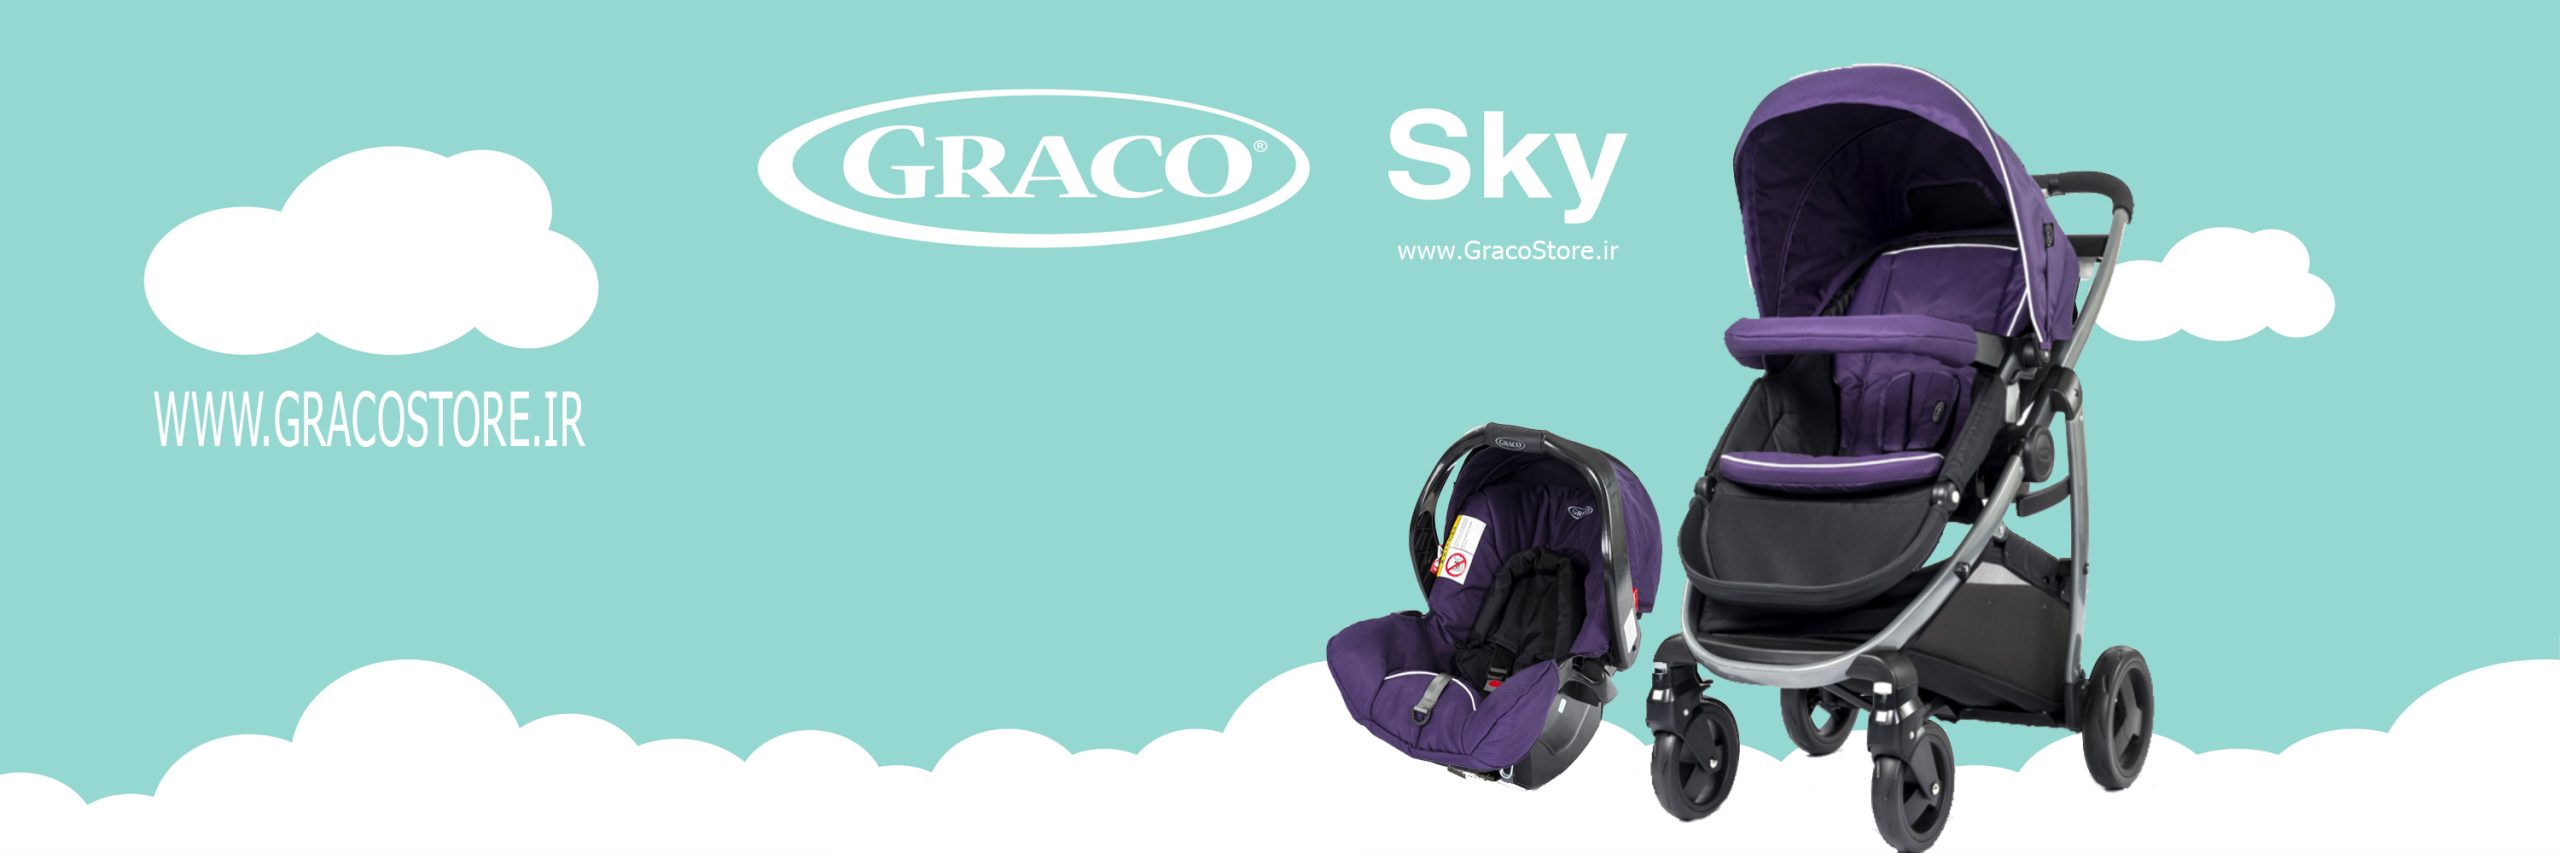 کالسکه و کریر گراکو مدل Sky Purple Shadow, کالسکه و کریر گراکو مدل Sky, کالسکه و کریر گراکو, کالسکه گراکو, گراکو